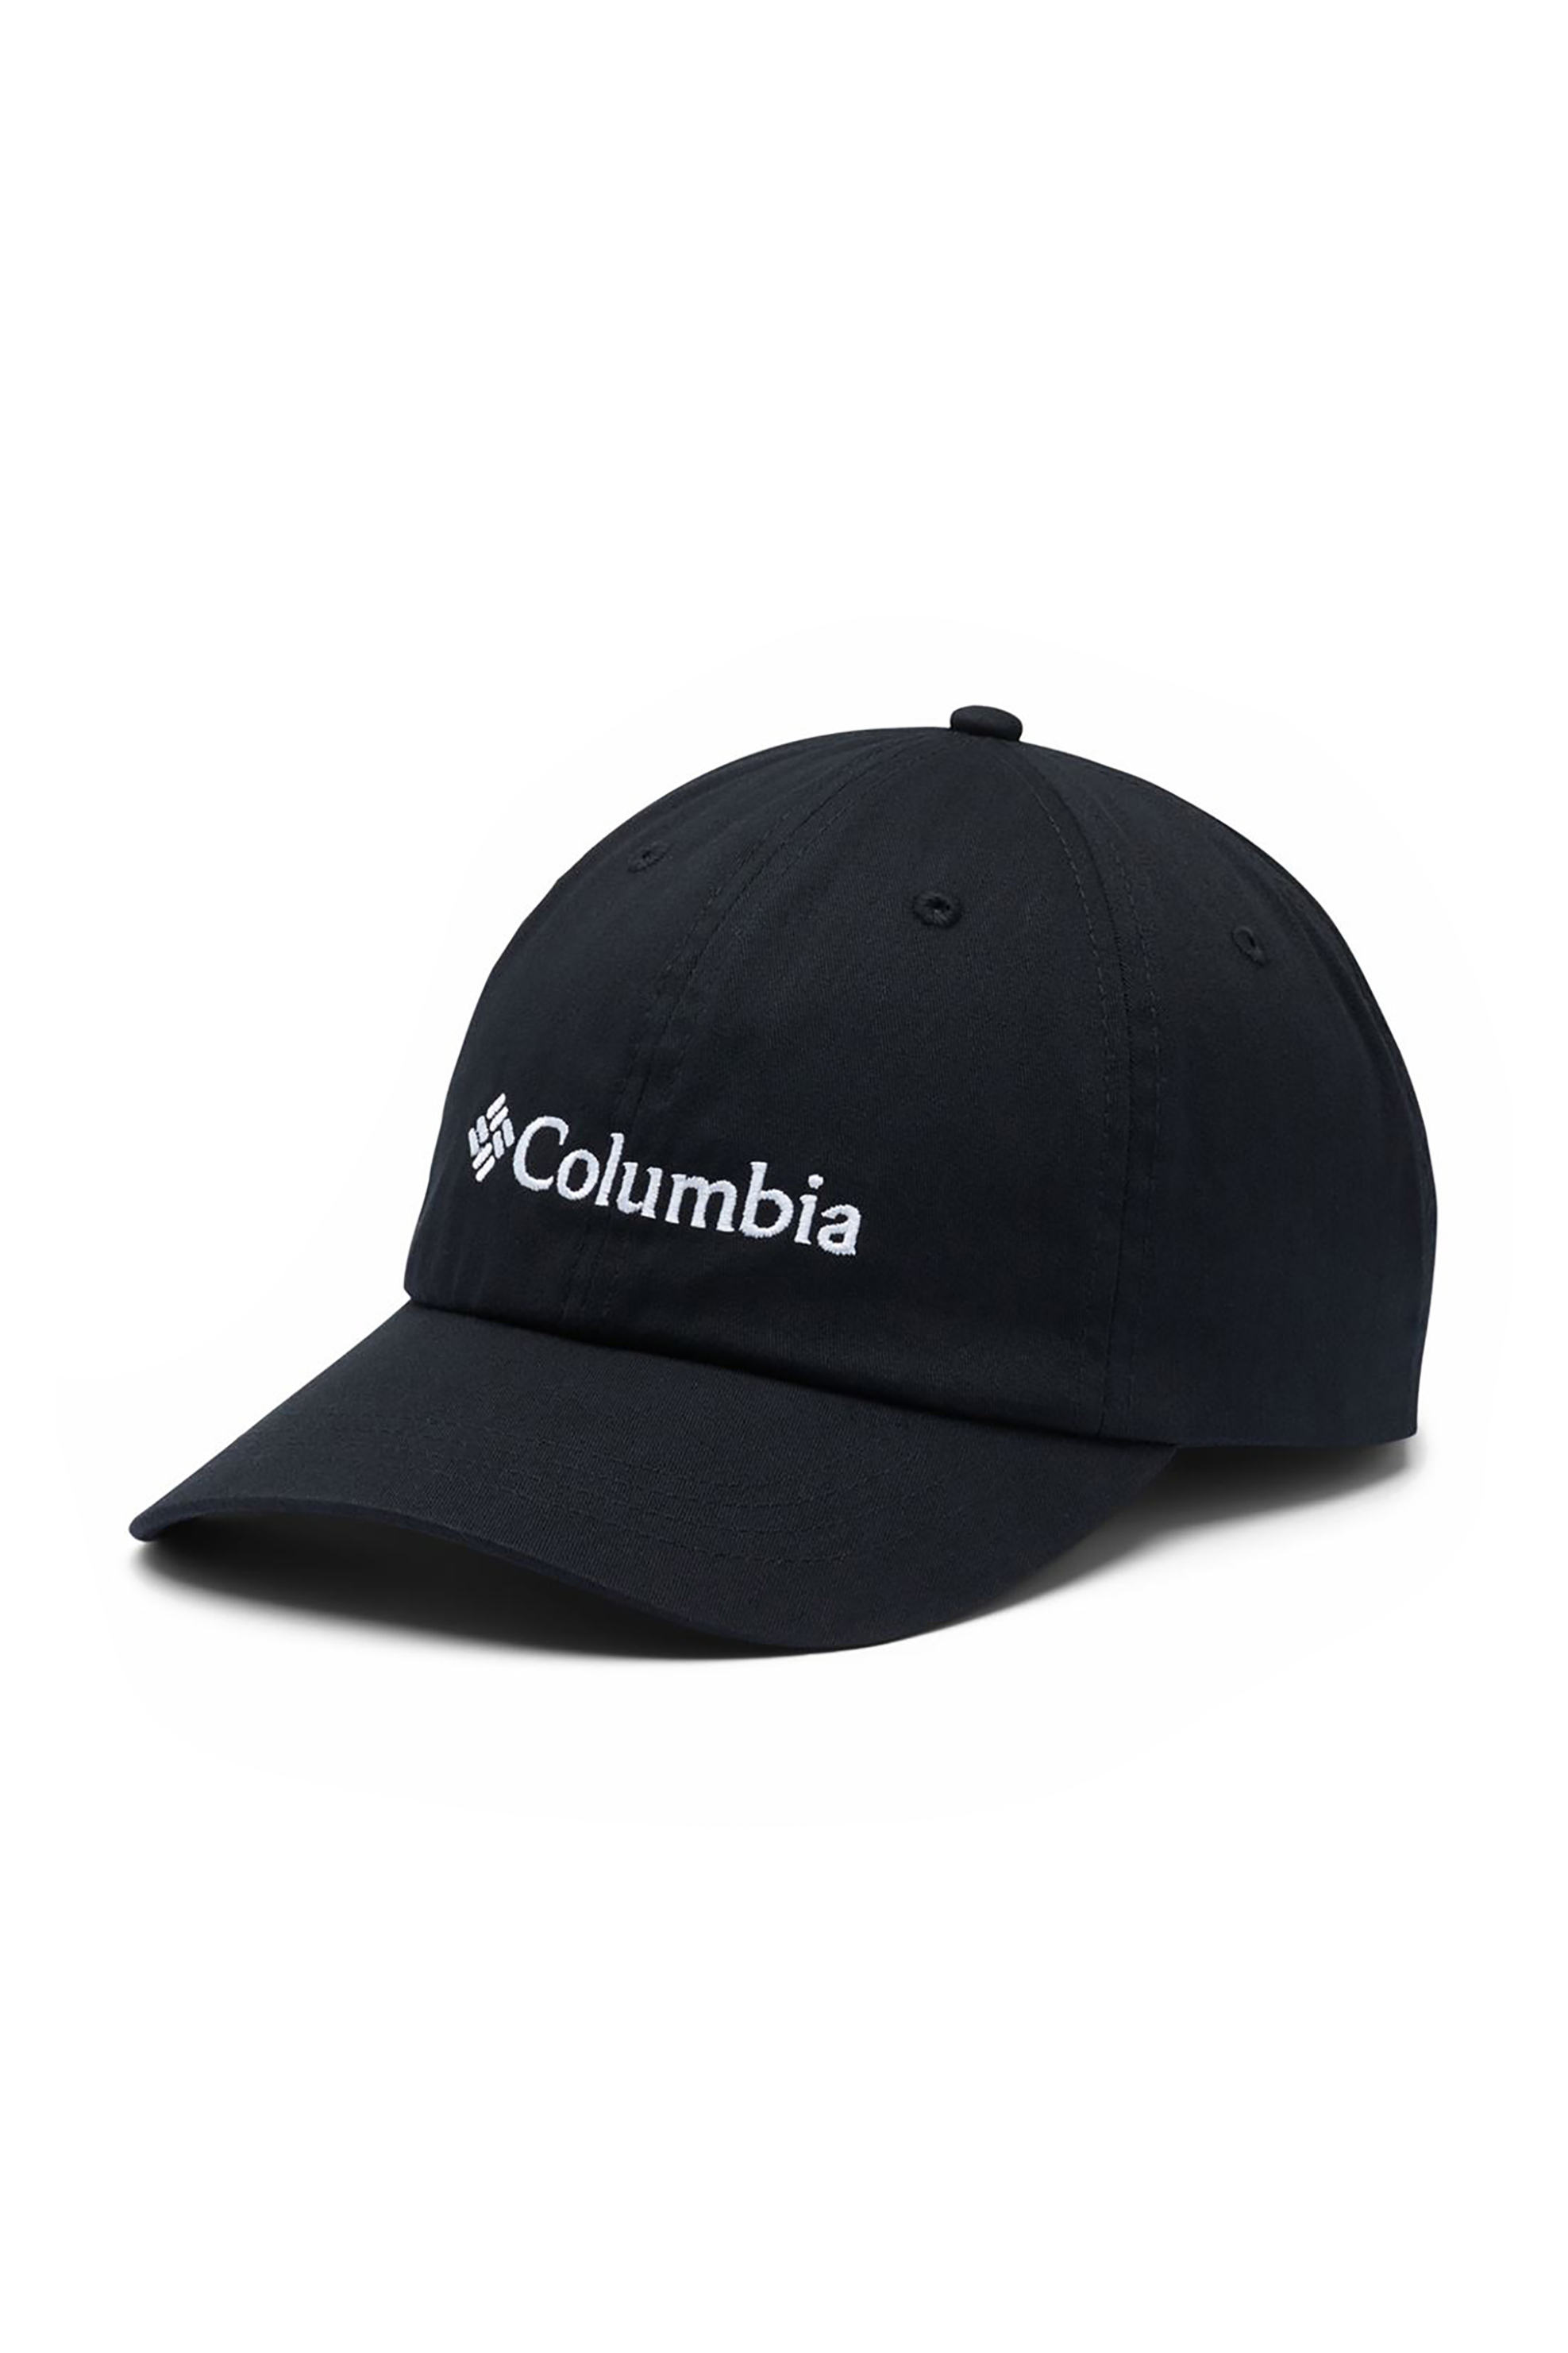 Ανδρική Μόδα > Ανδρικά Αξεσουάρ > Ανδρικά Καπέλα & Σκούφοι Columbia unisex καπέλο jockey με κεντημένο λογότυπο ''Rοc™ II'' - CU0019013TEM Μαύρο